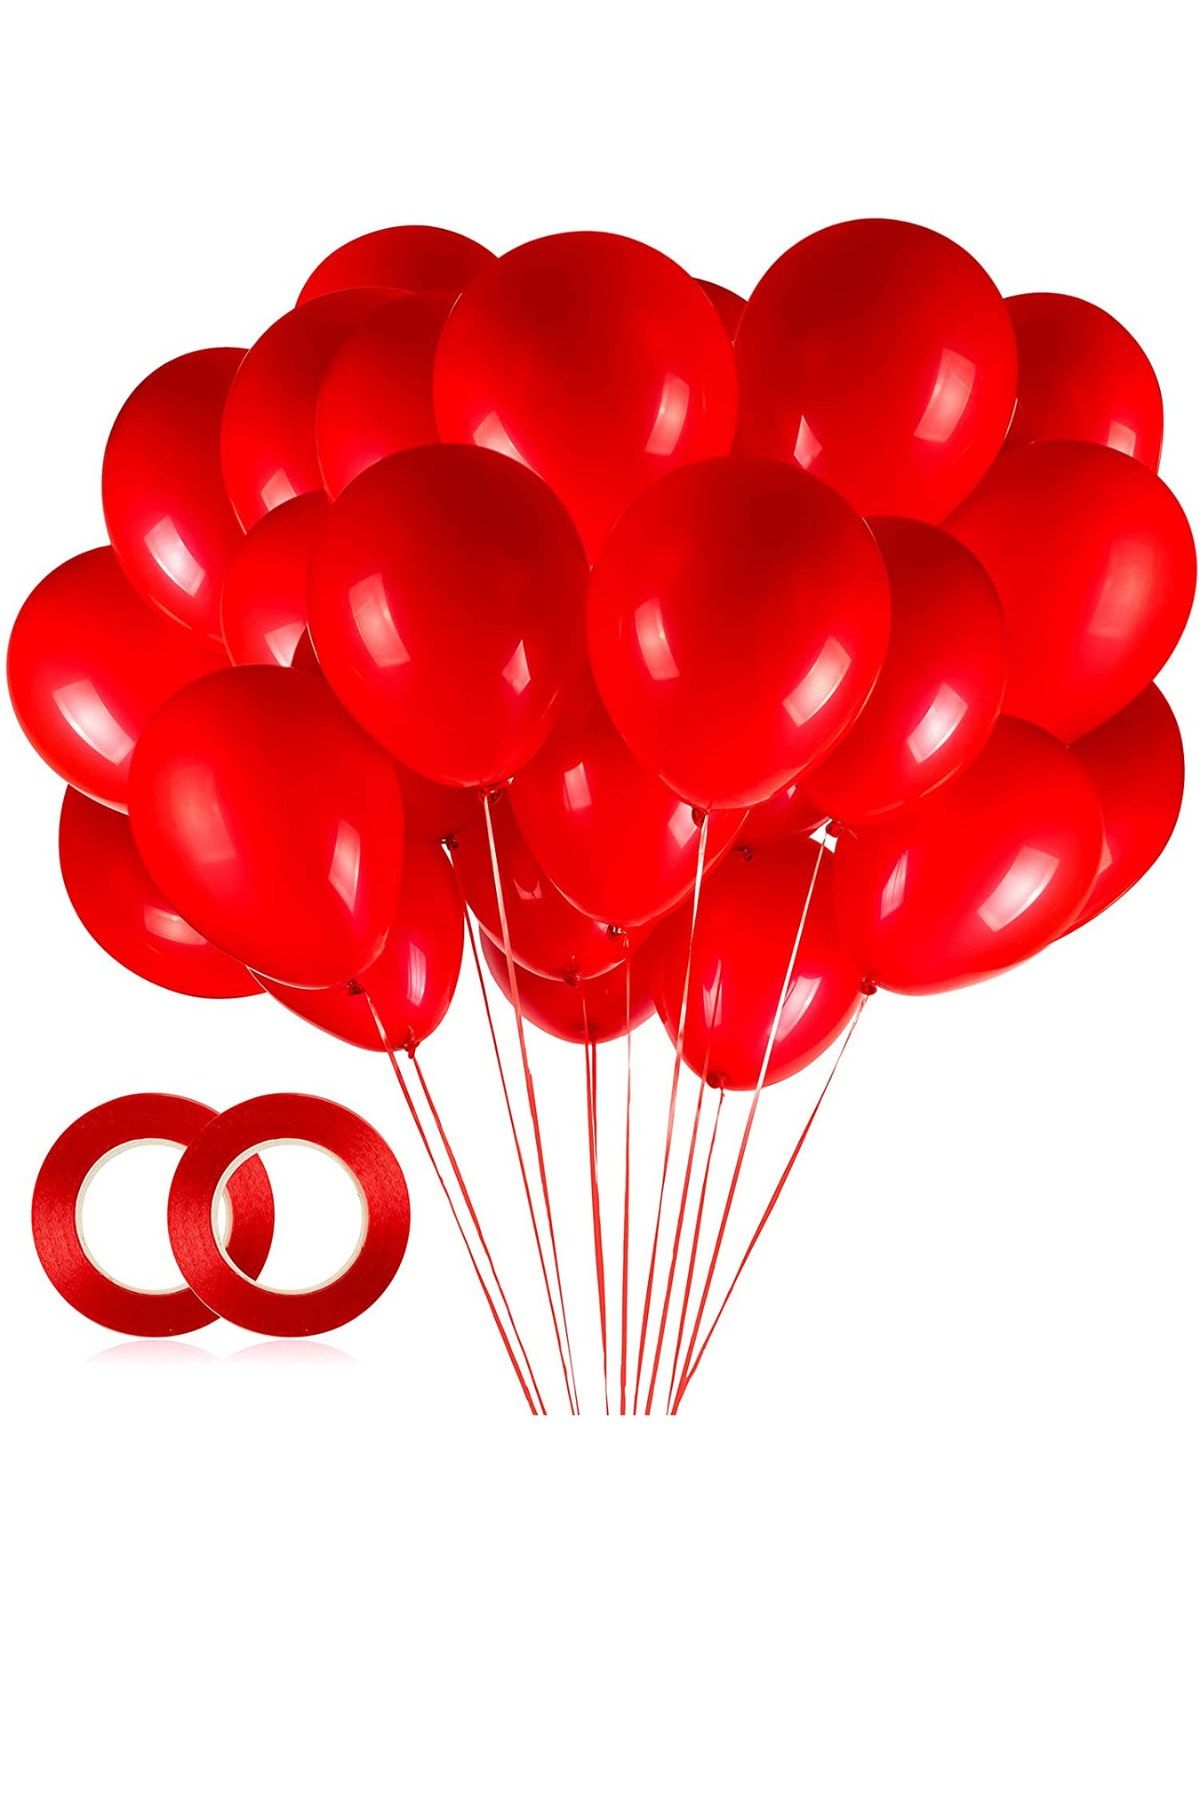 ELGALA Balon Parlak Metalik Helyum Balon 10 Adet Kırmızı Renk